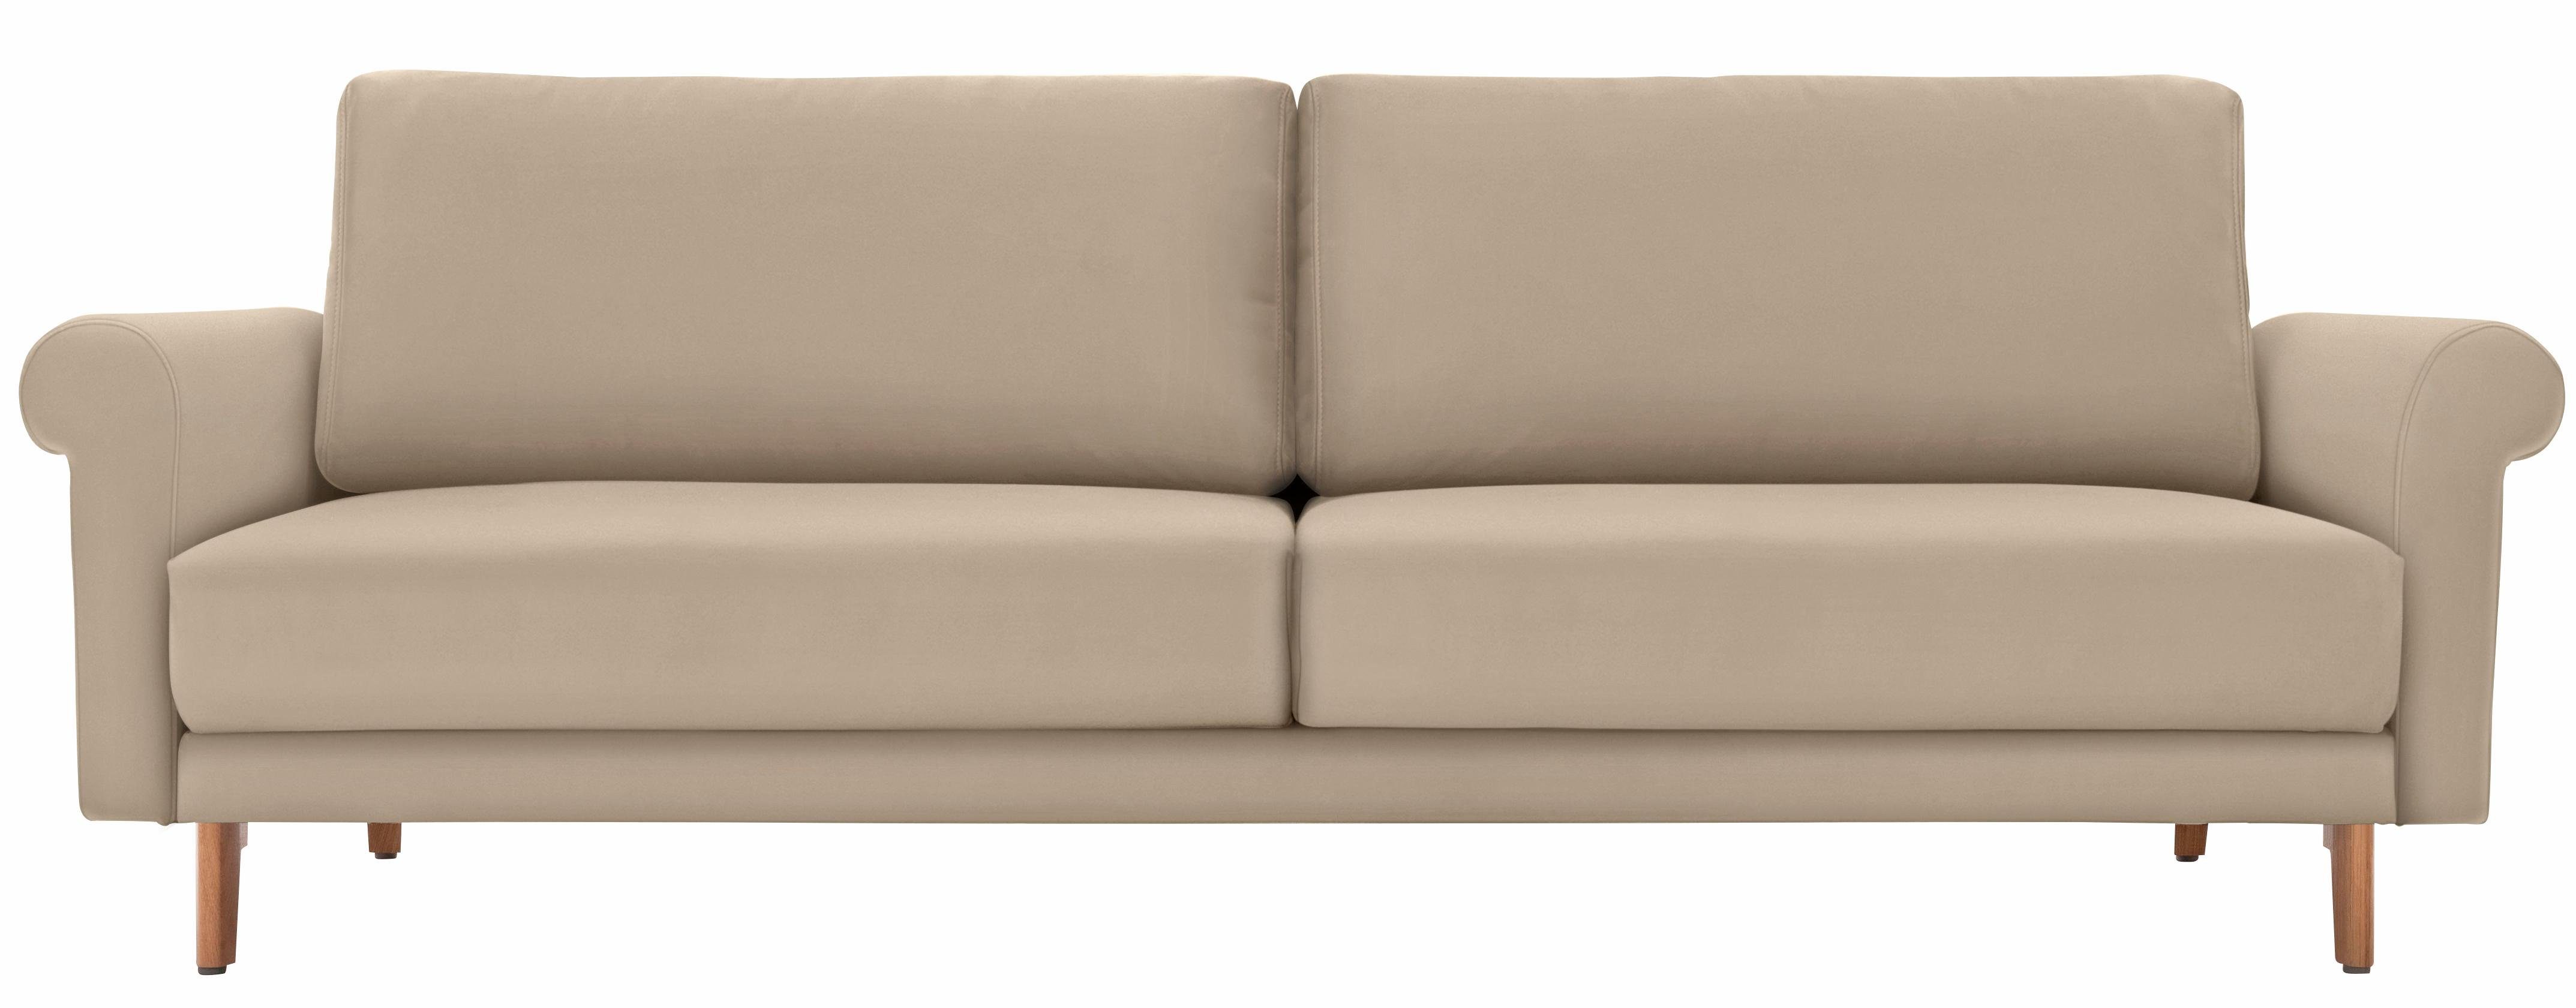 hülsta sofa 2-Sitzer hs.450, modern Landhaus, Füße in Nussbaum, Breite 168 cm